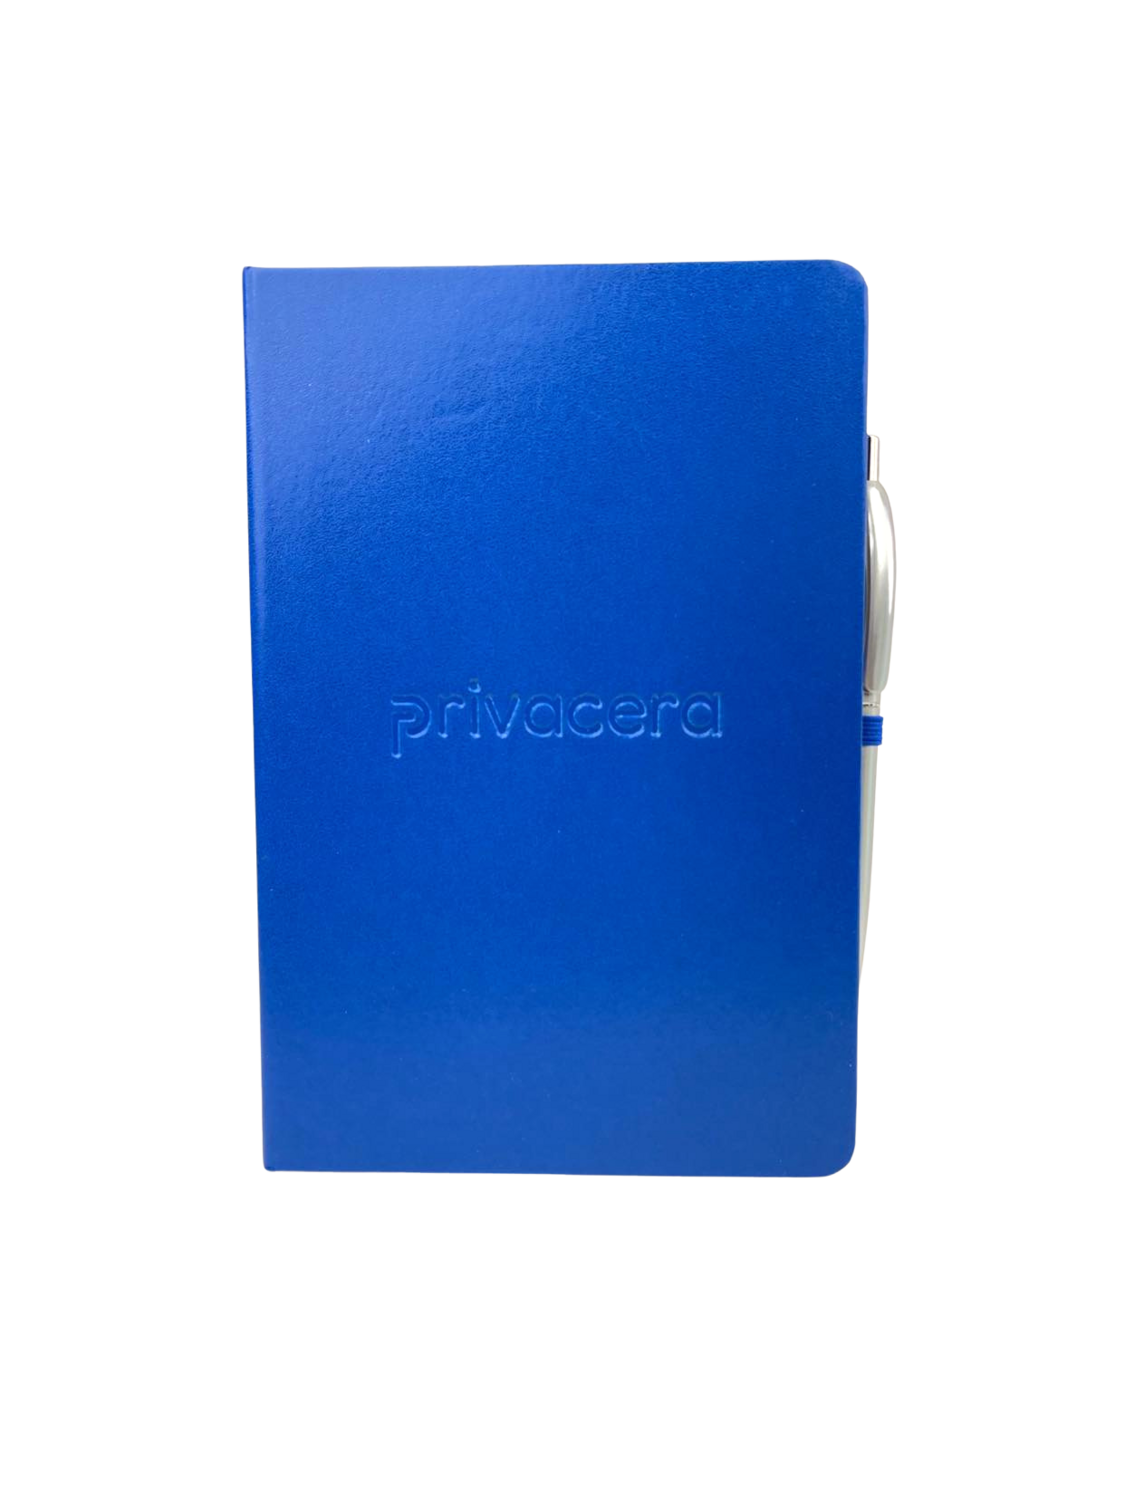 Privacera Notebook